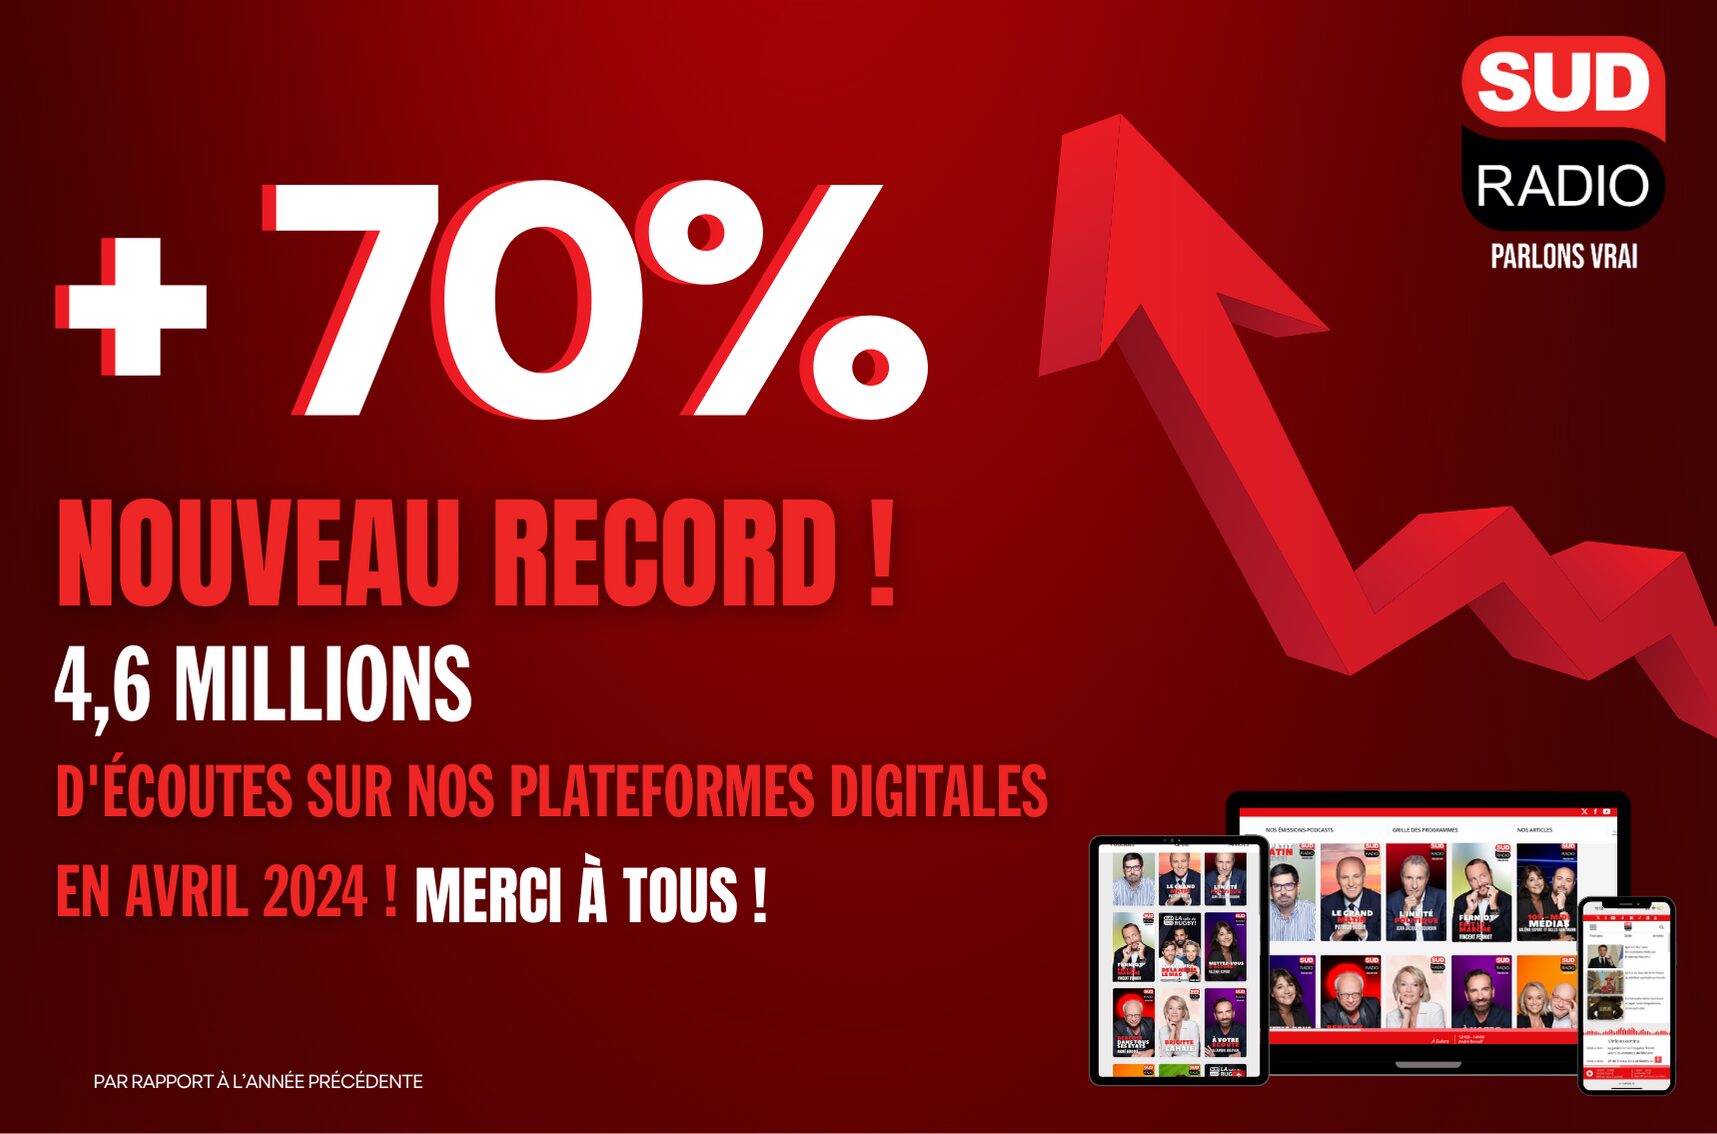 Record d'audience digitale en mars pour Sud Radio en France avec plus de 4,6 millions d'écoutes uniquement sur nos environnements digitaux comme l'appli Sud radio, sudradio.fr, les tablettes et les enceintes connectées !